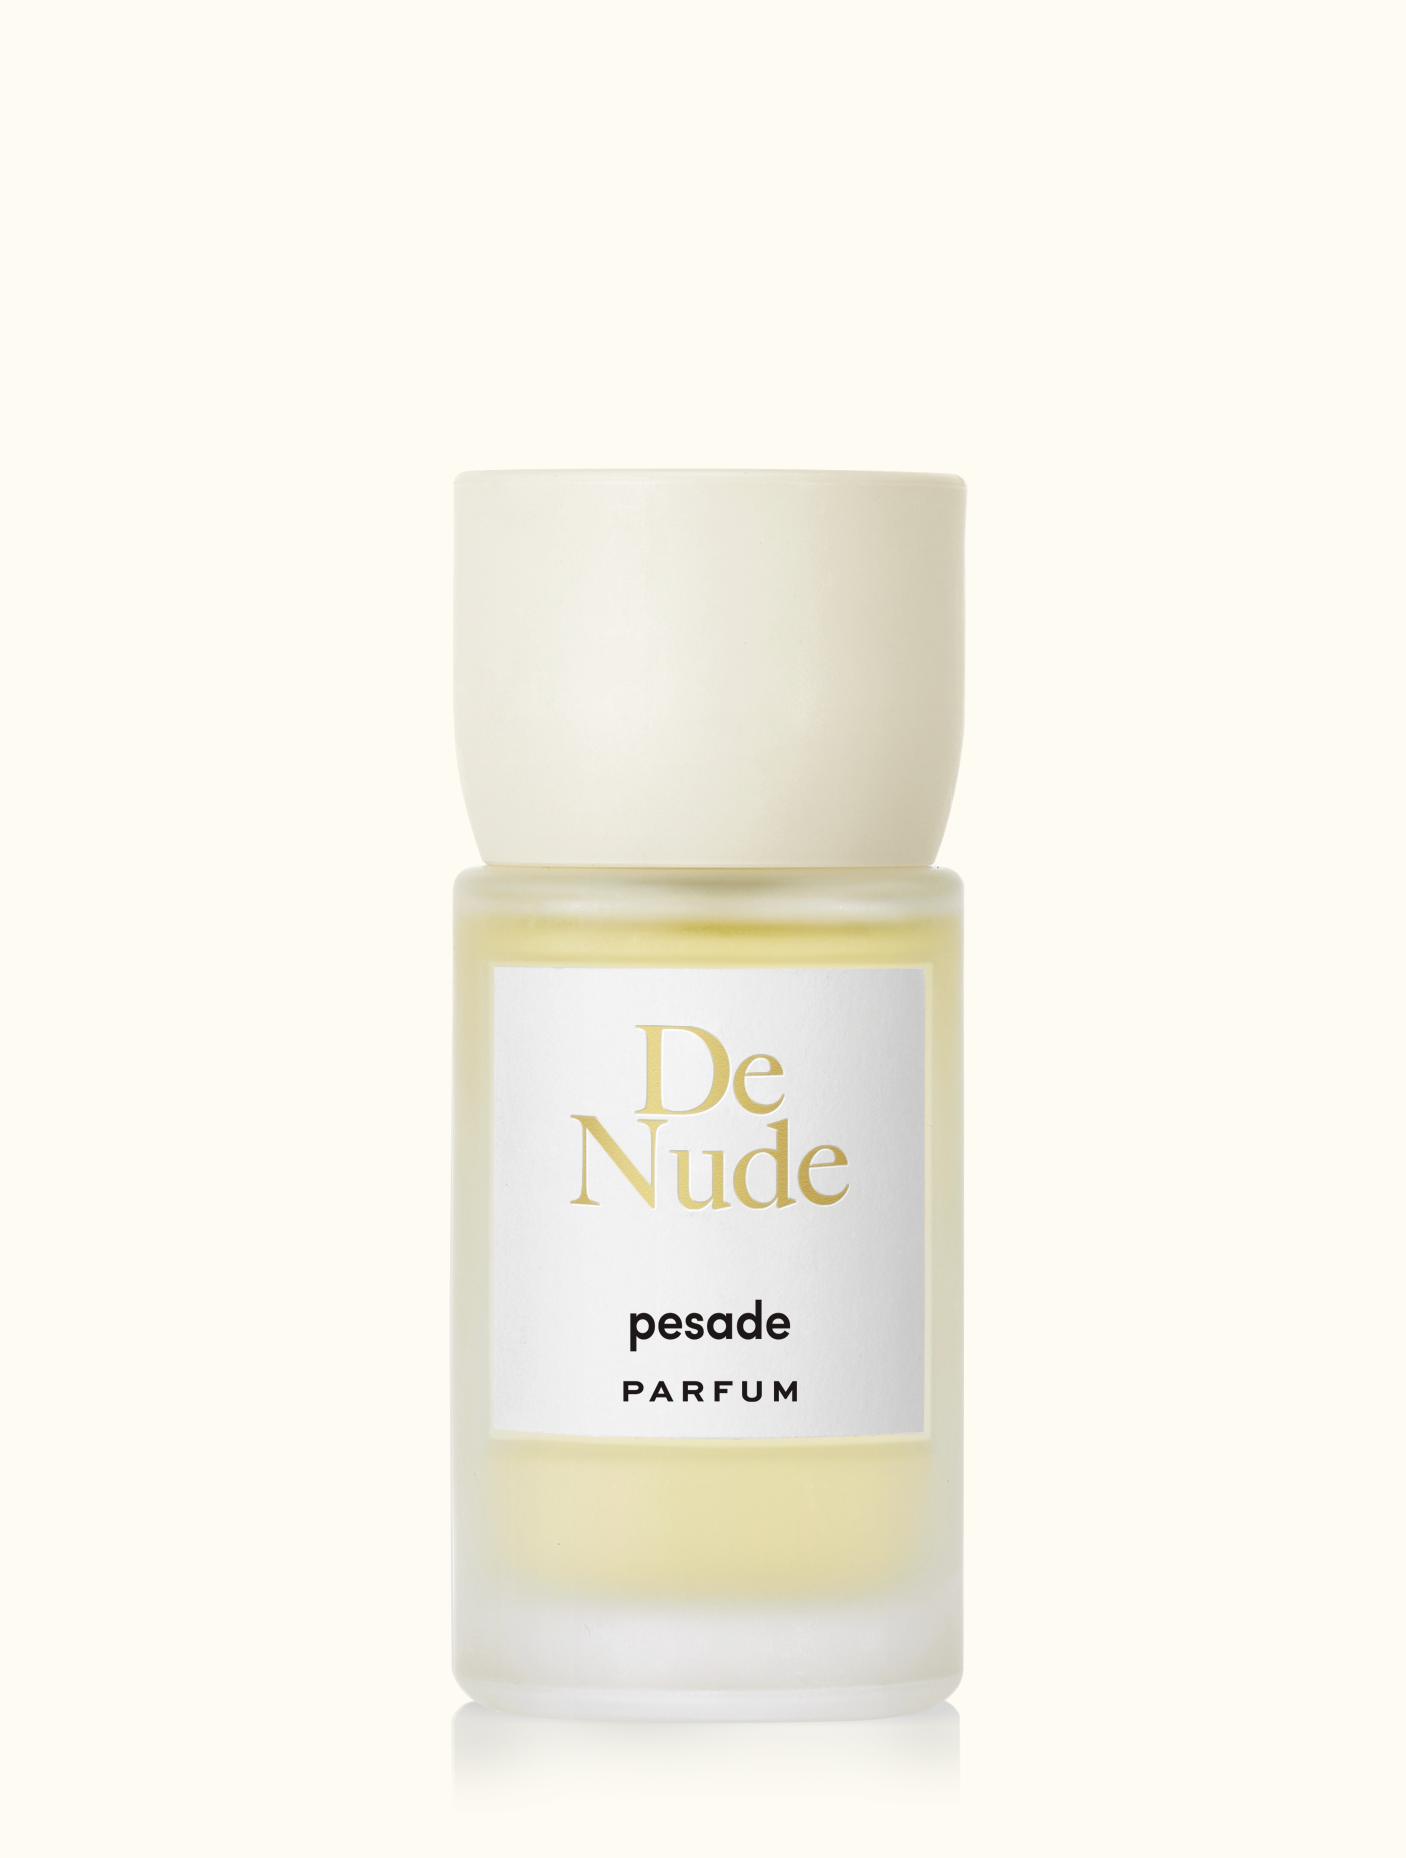 Pesade | De Nude Parfum